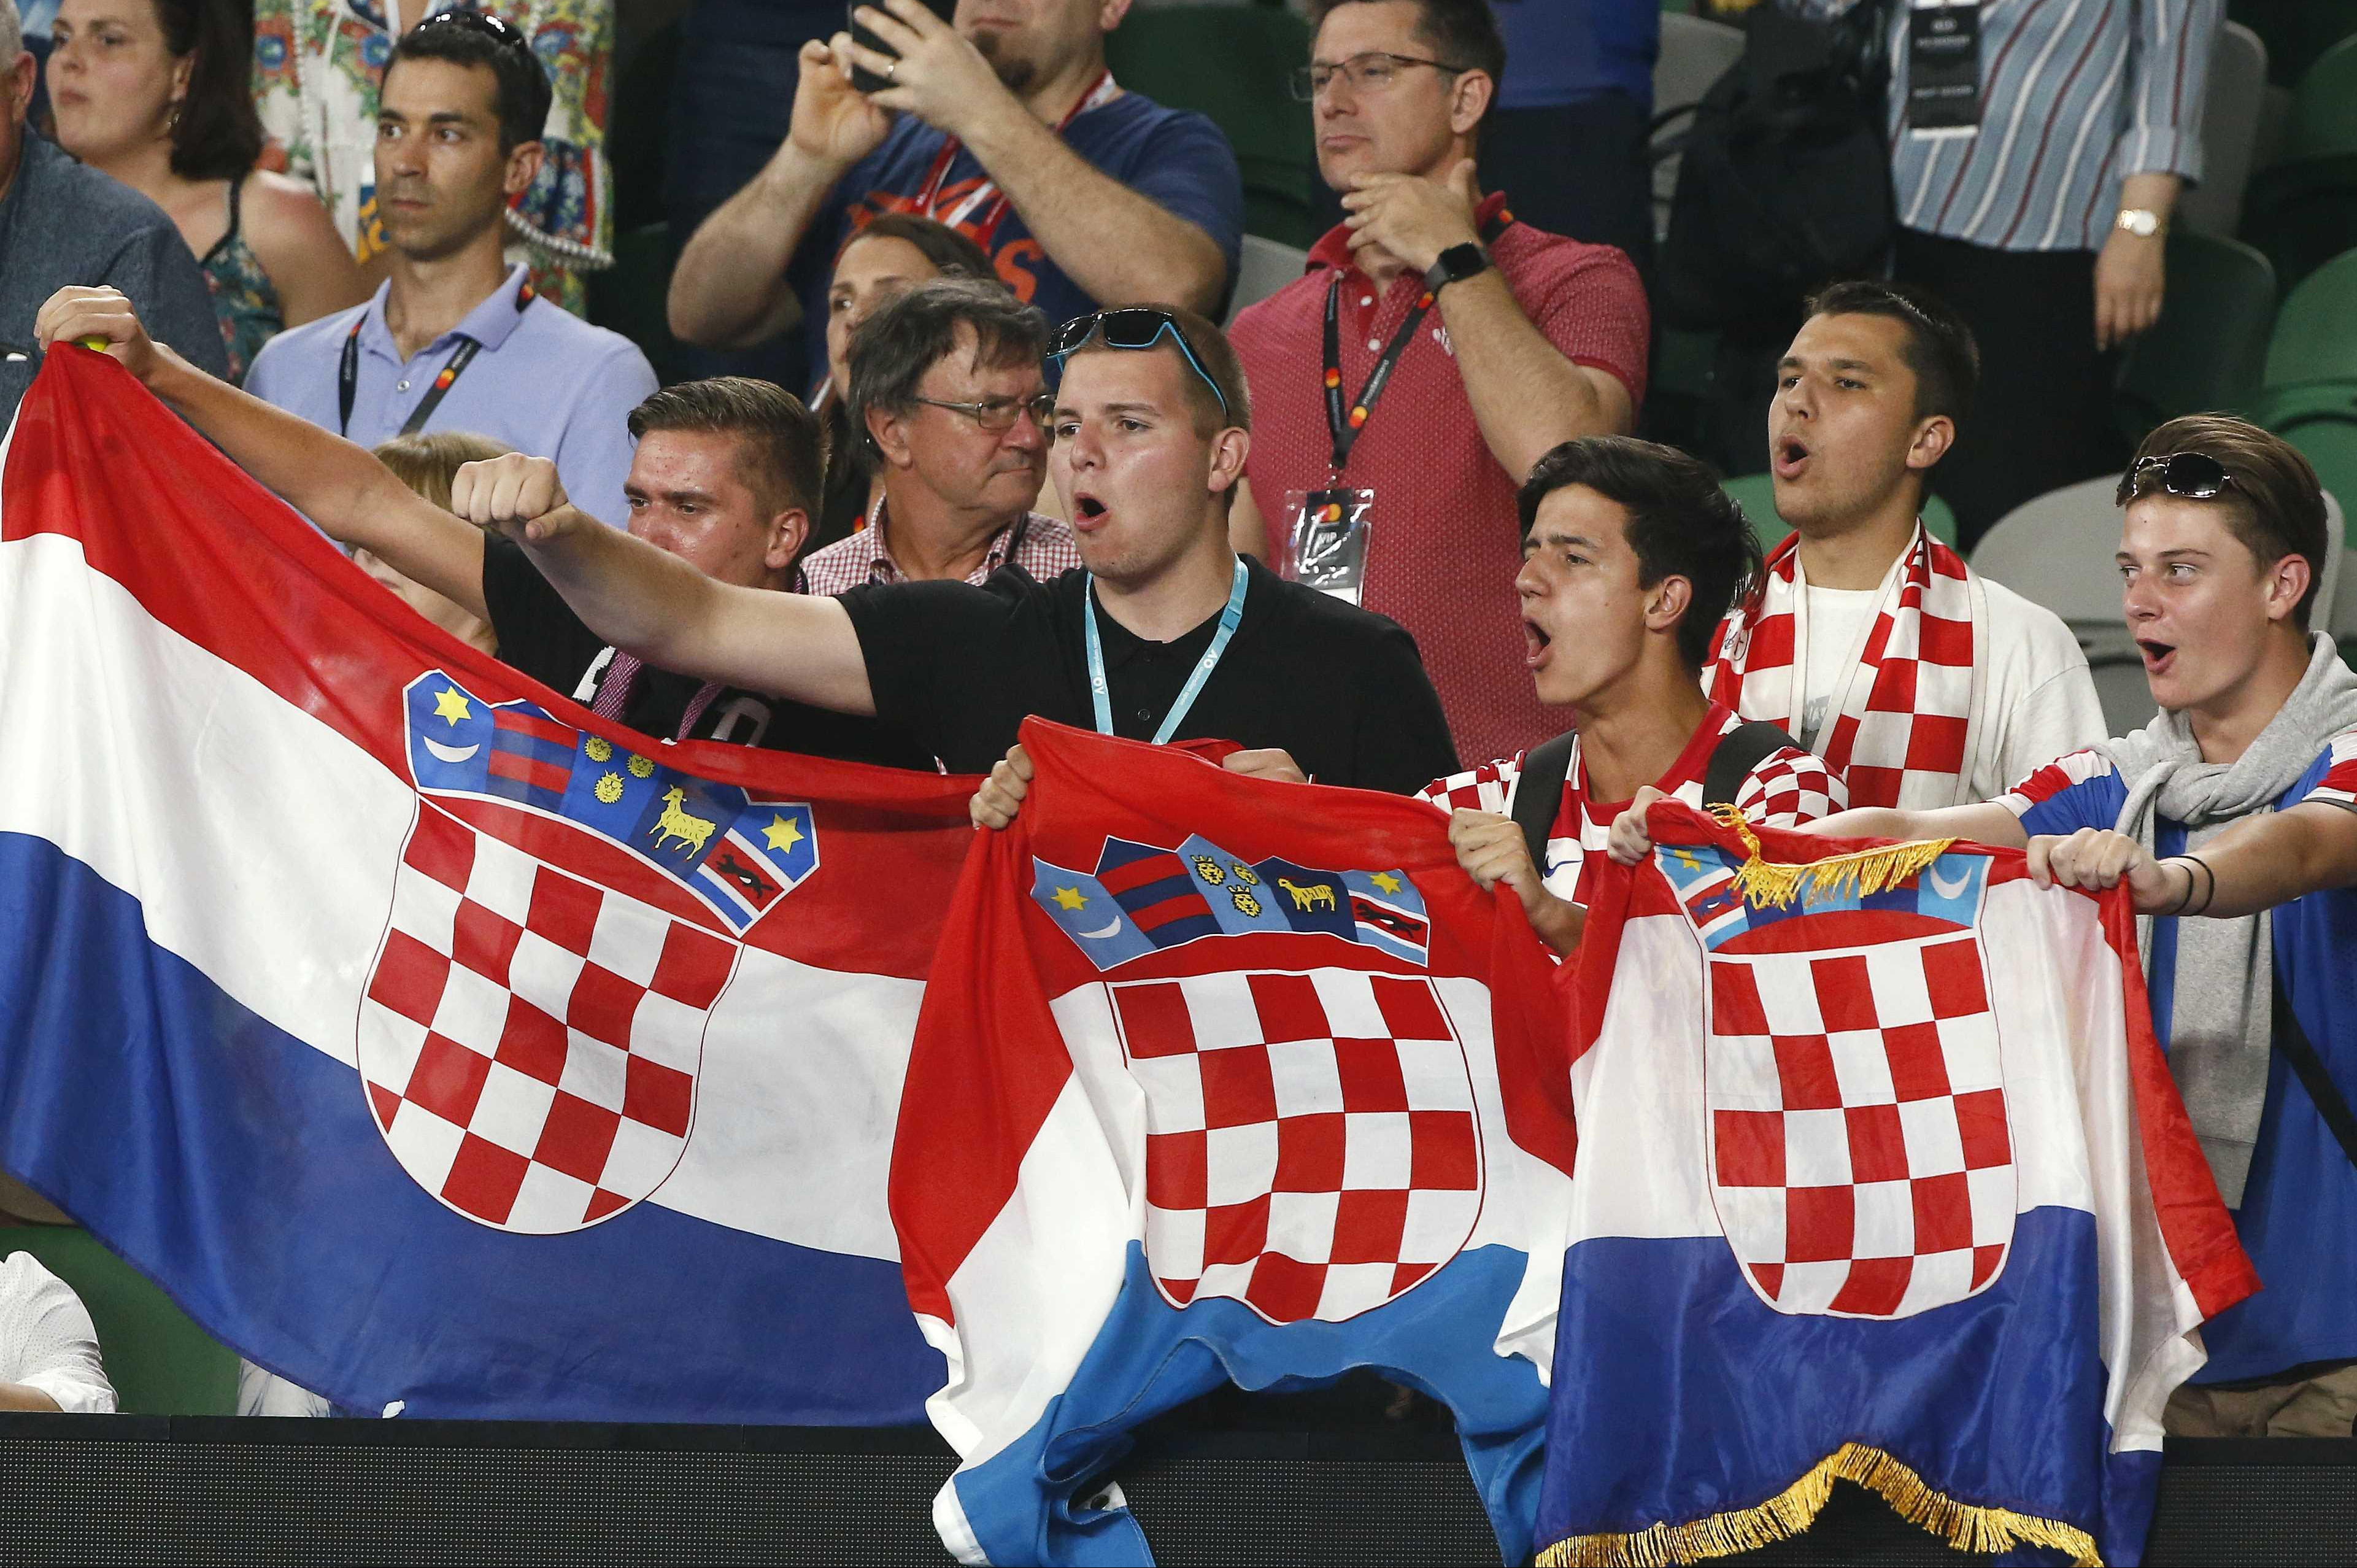 NOVA HRVATSKA SVINJARIJA! Fudbaleri sa zastavom koja simboliše pogrom Srba ispraćeni na SP!